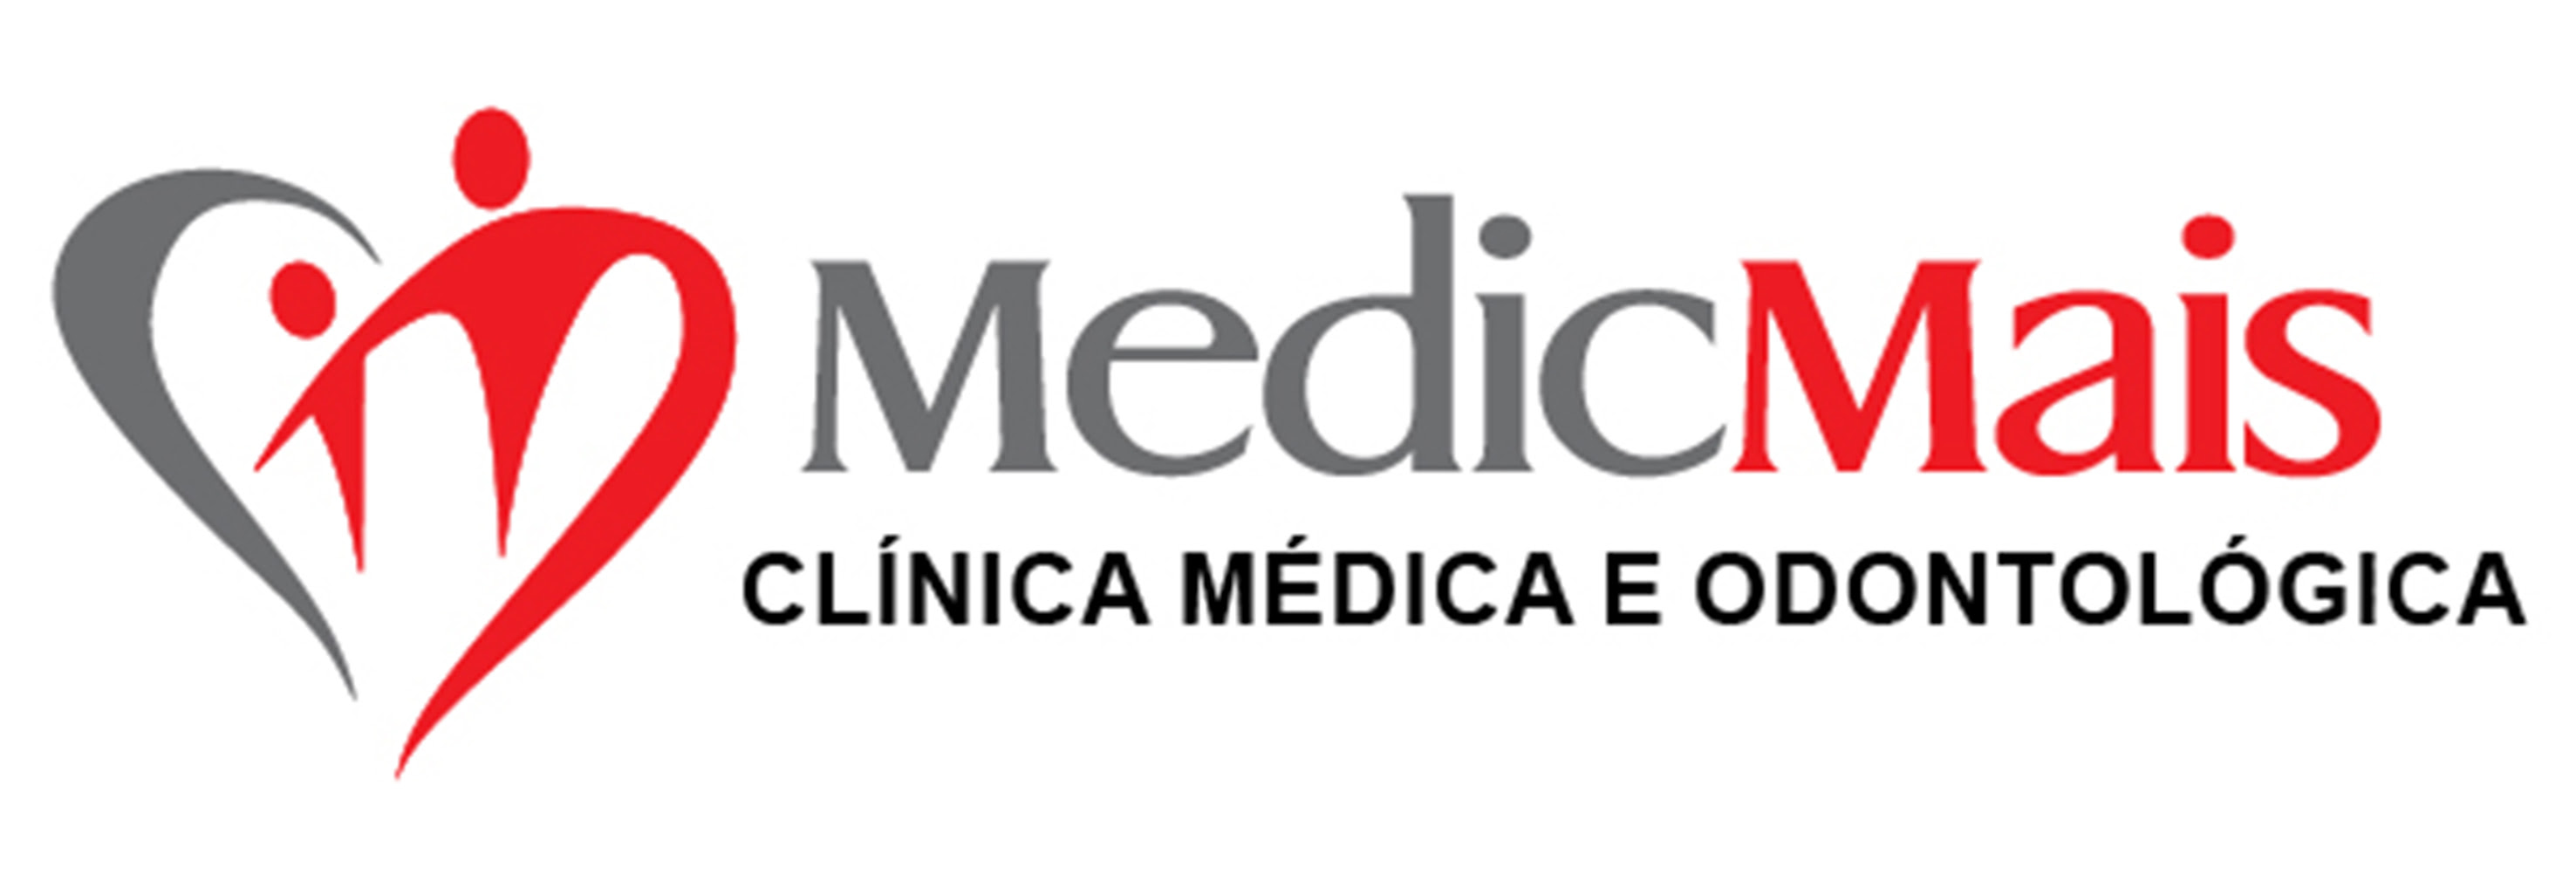 Clínica médica popular lança programa de franquia em todo Brasil